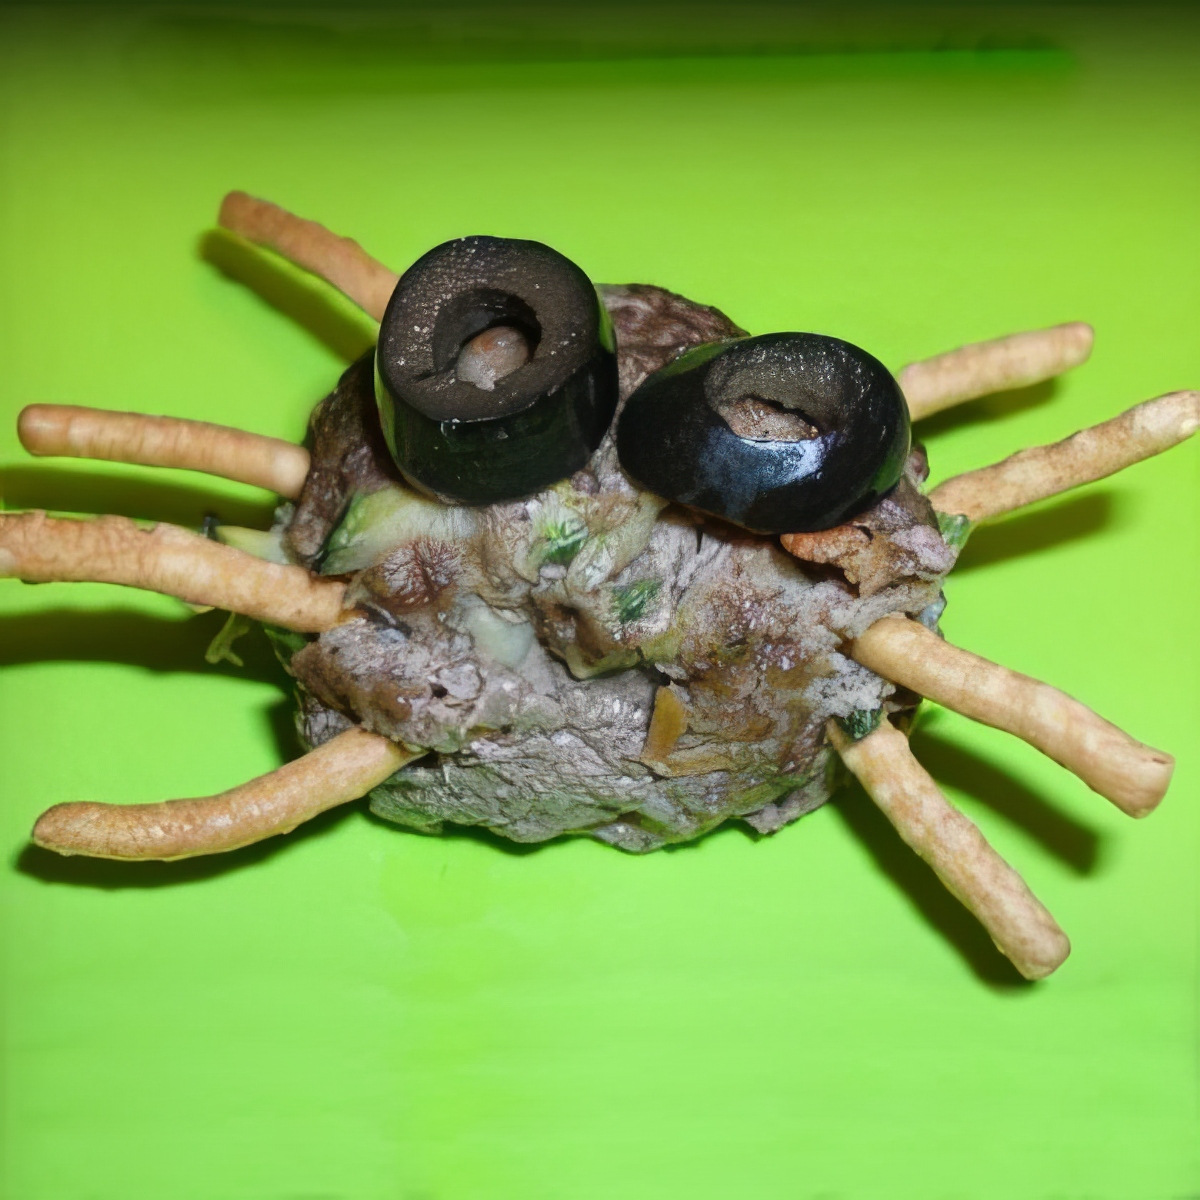 Spider Meatballs, Fun Halloween Activities For 5-Year-Olds